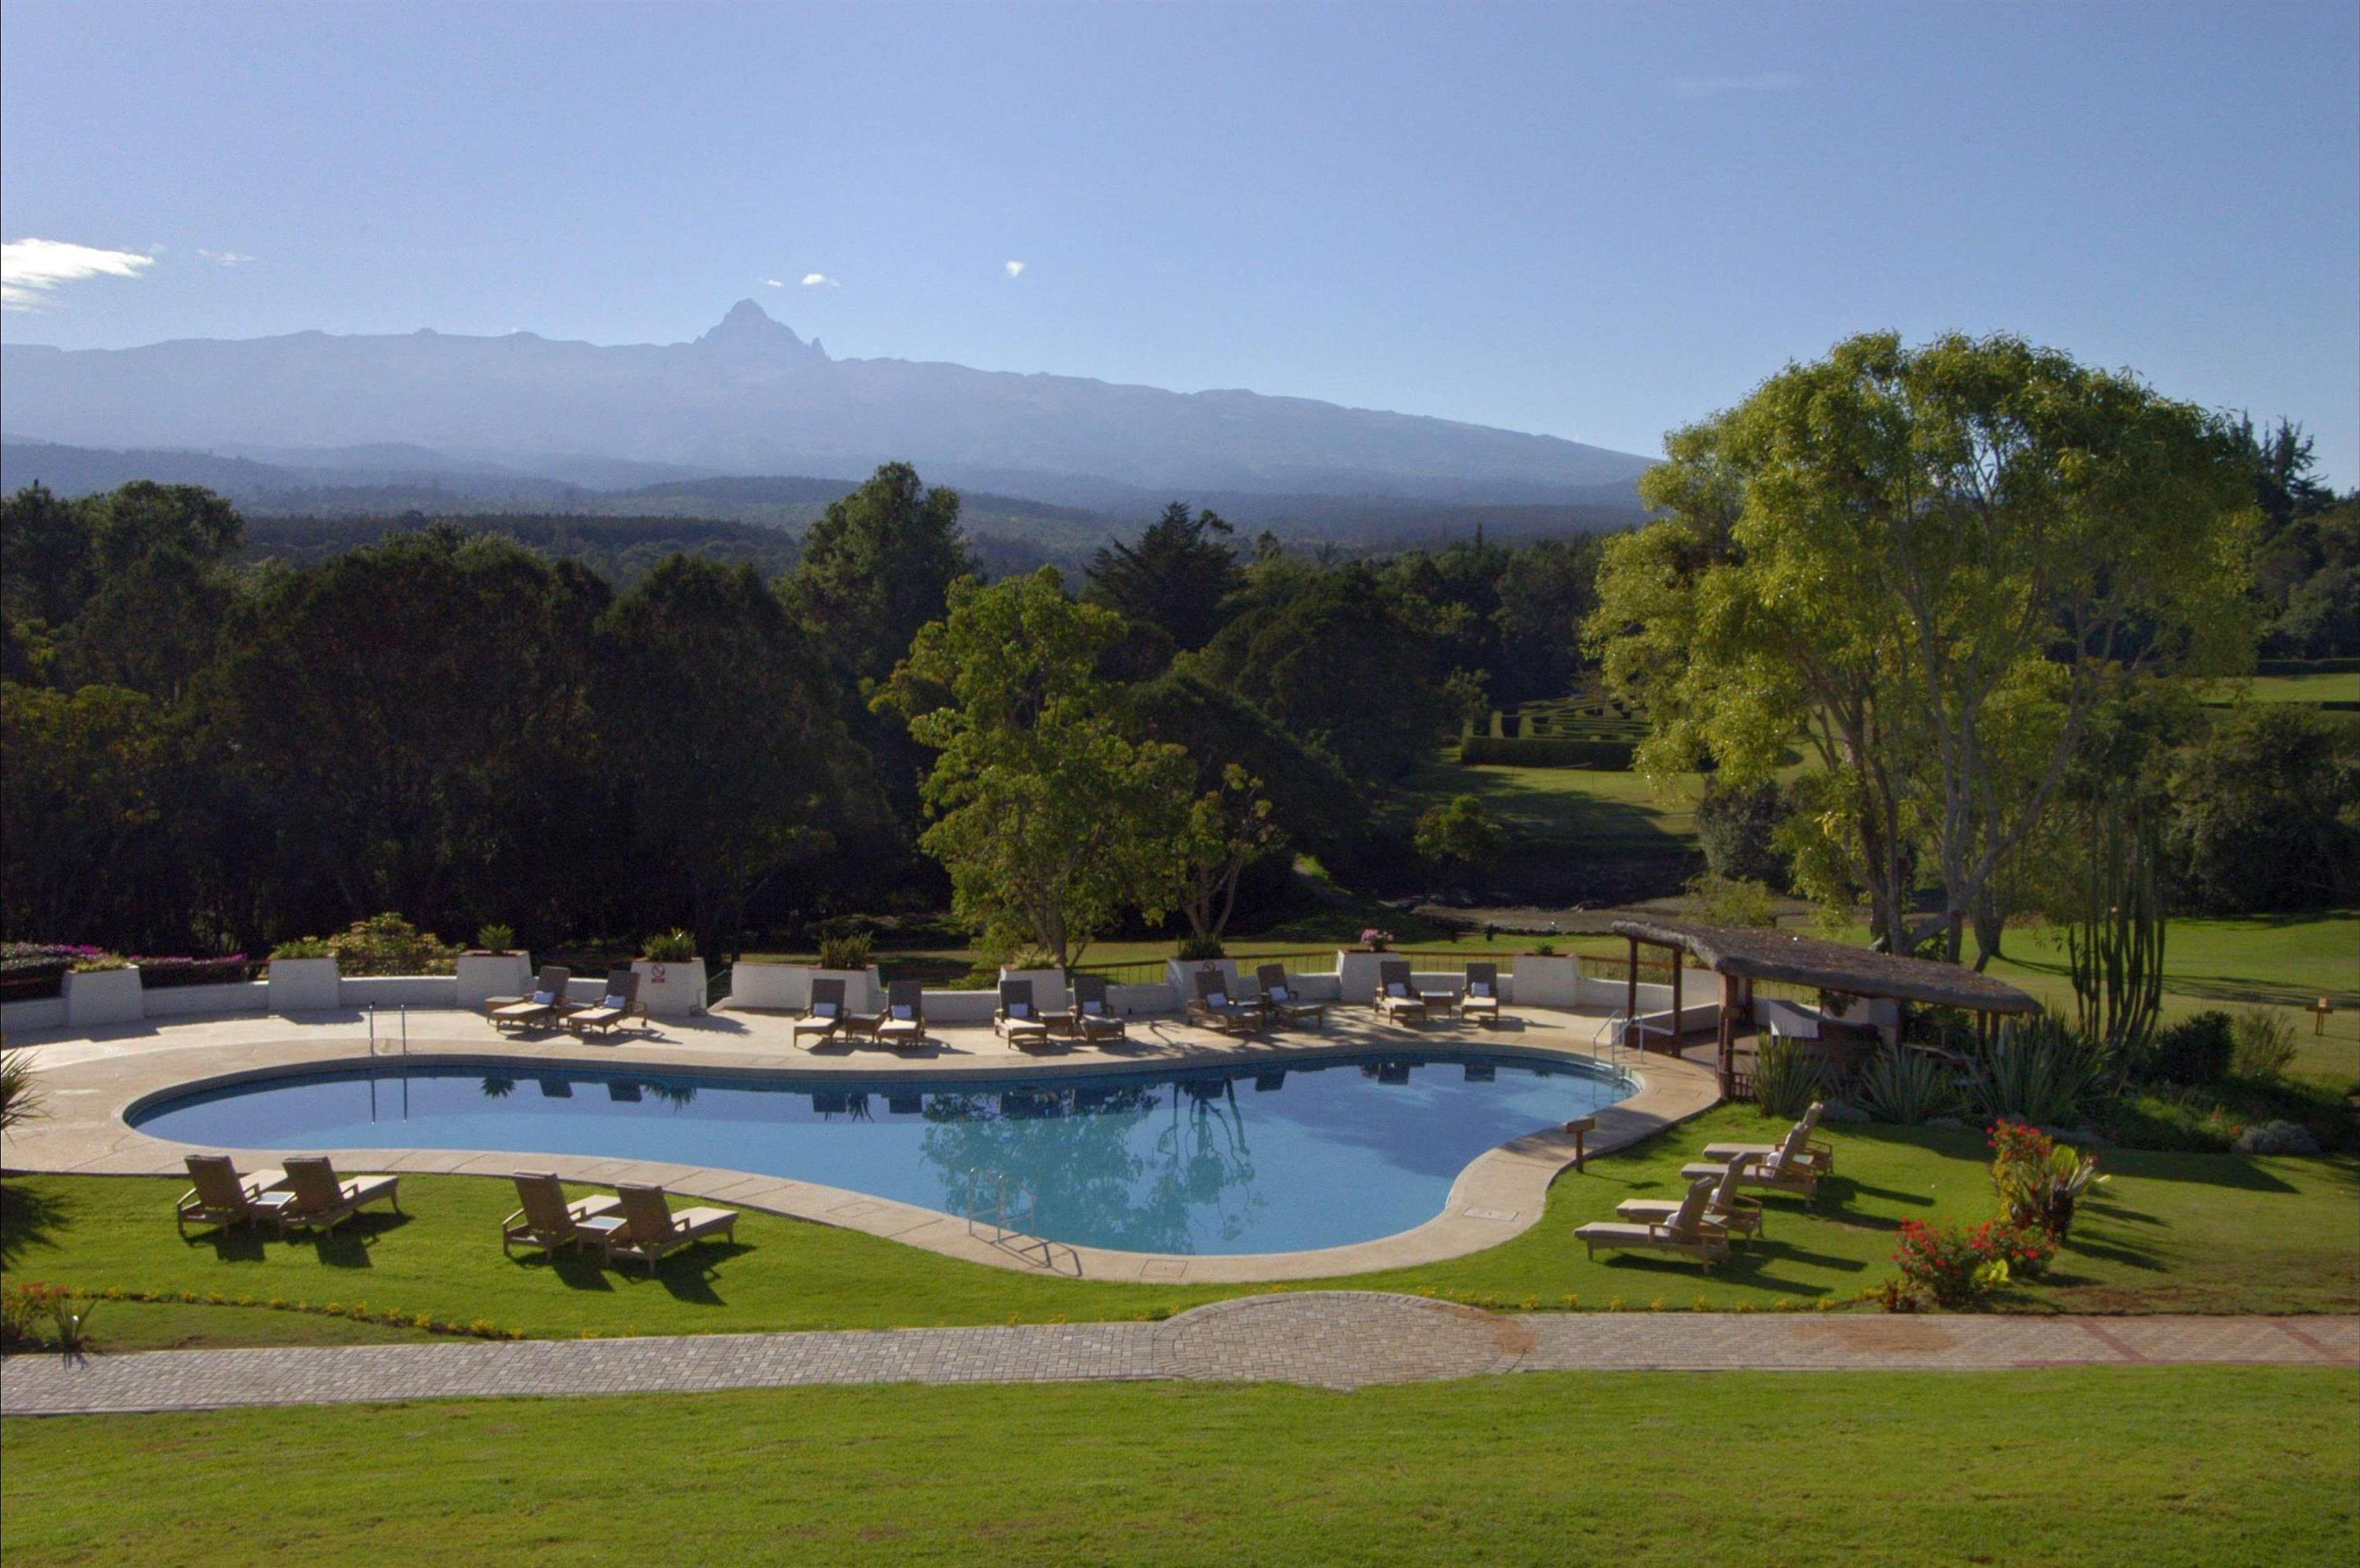 מלון נאניוקי Fairmont Mount Kenya Safari Club מתקנים תמונה